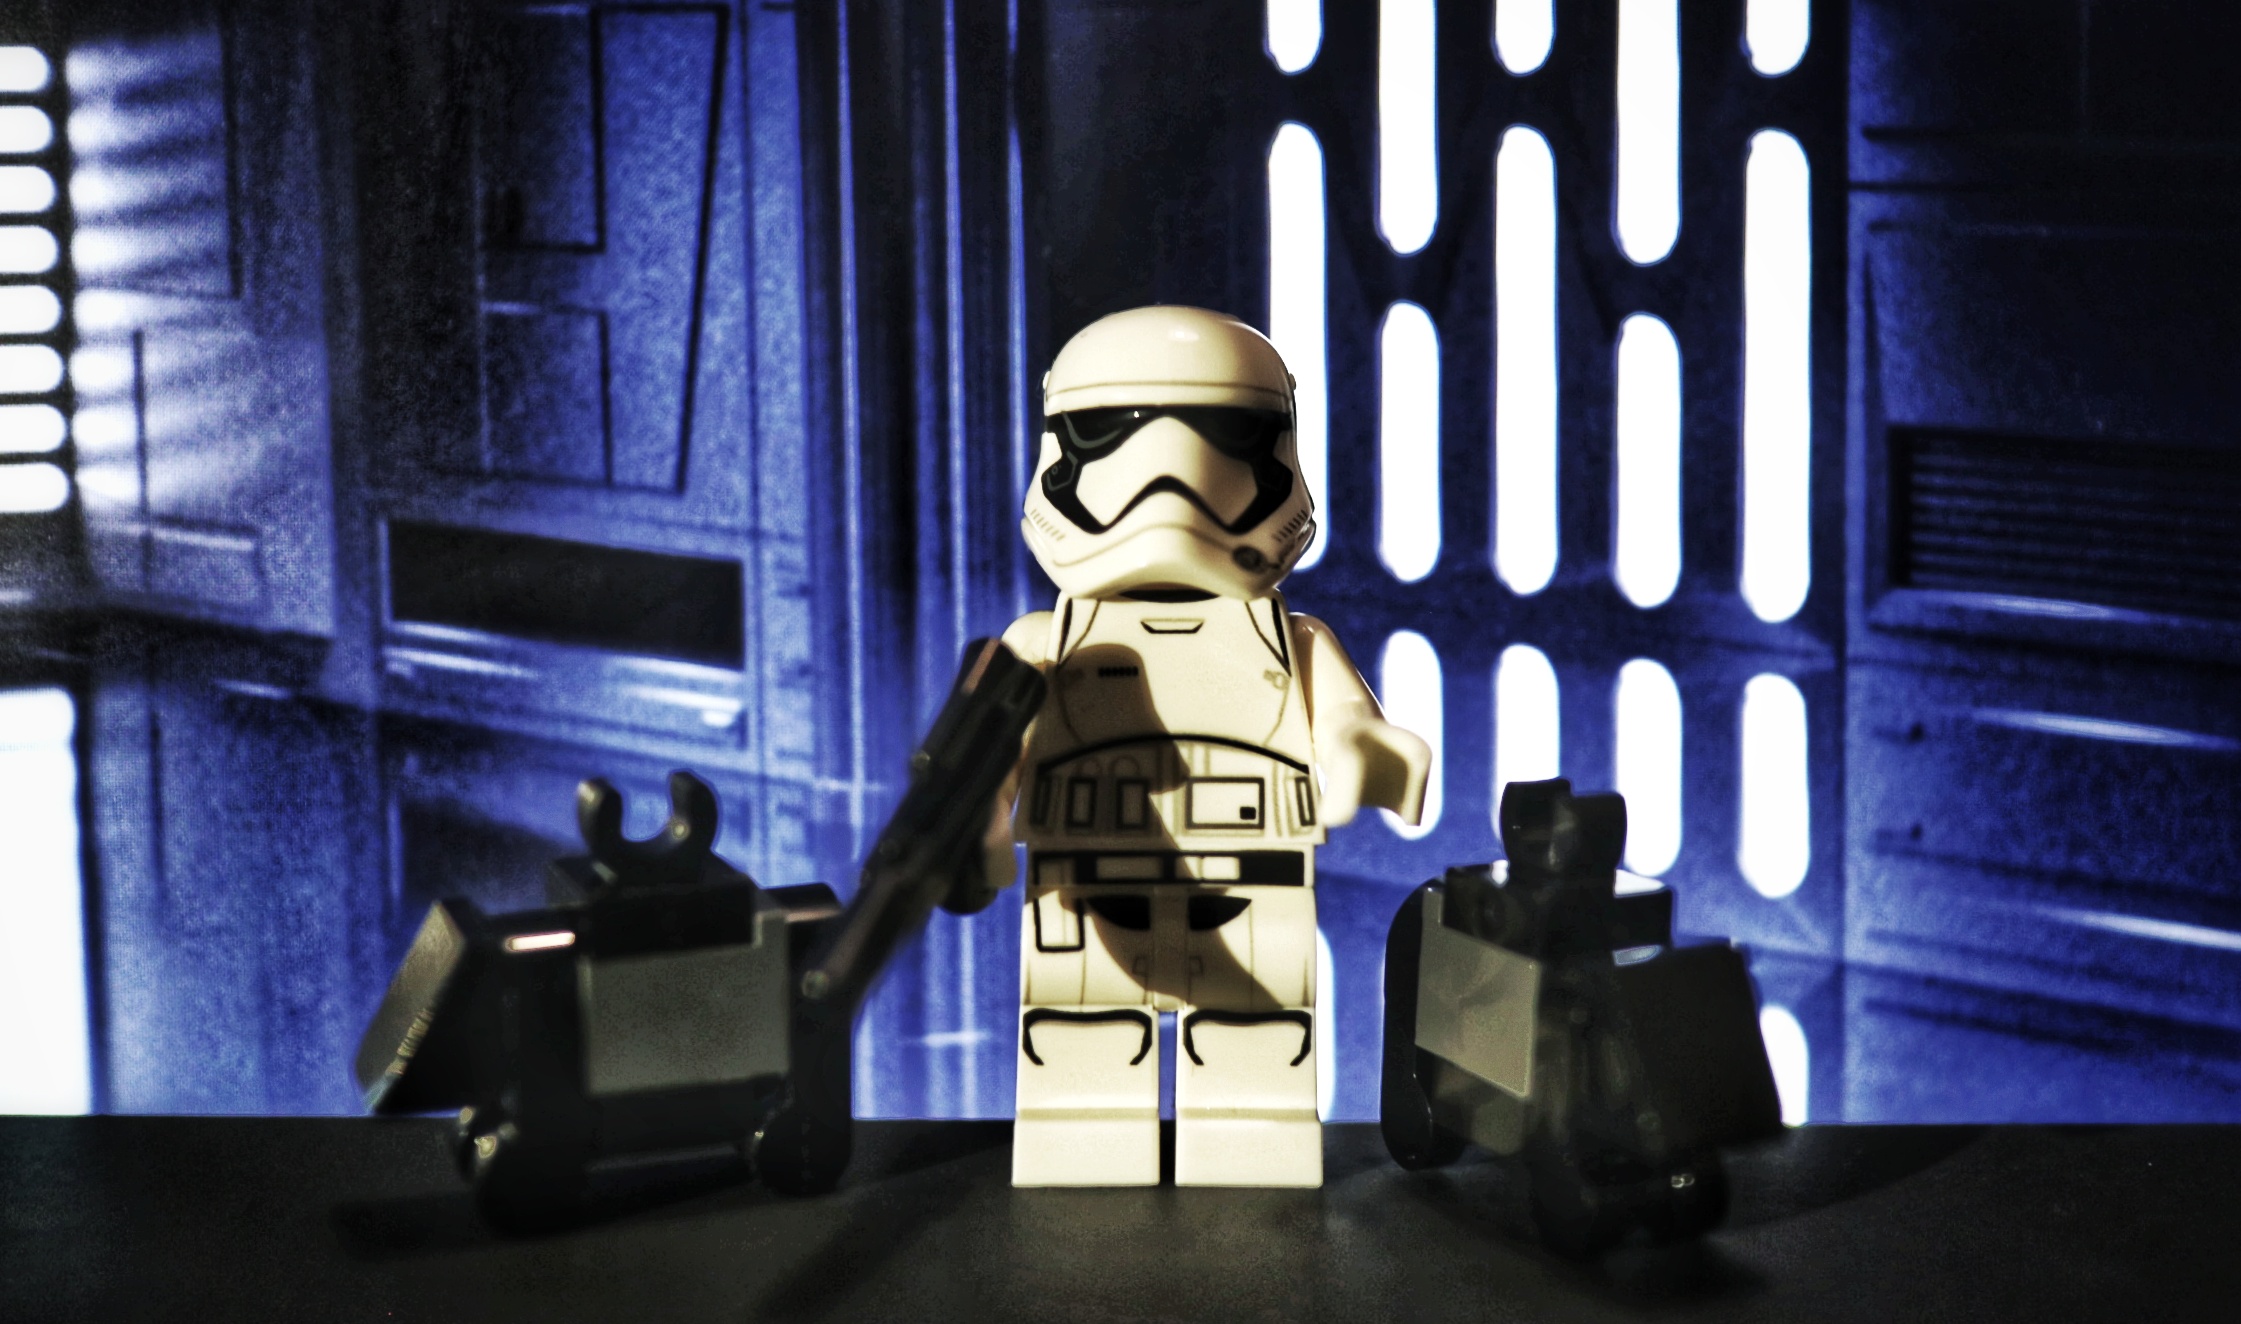 Lego-Adventskalender: Stormtrooper und Mouse Droids